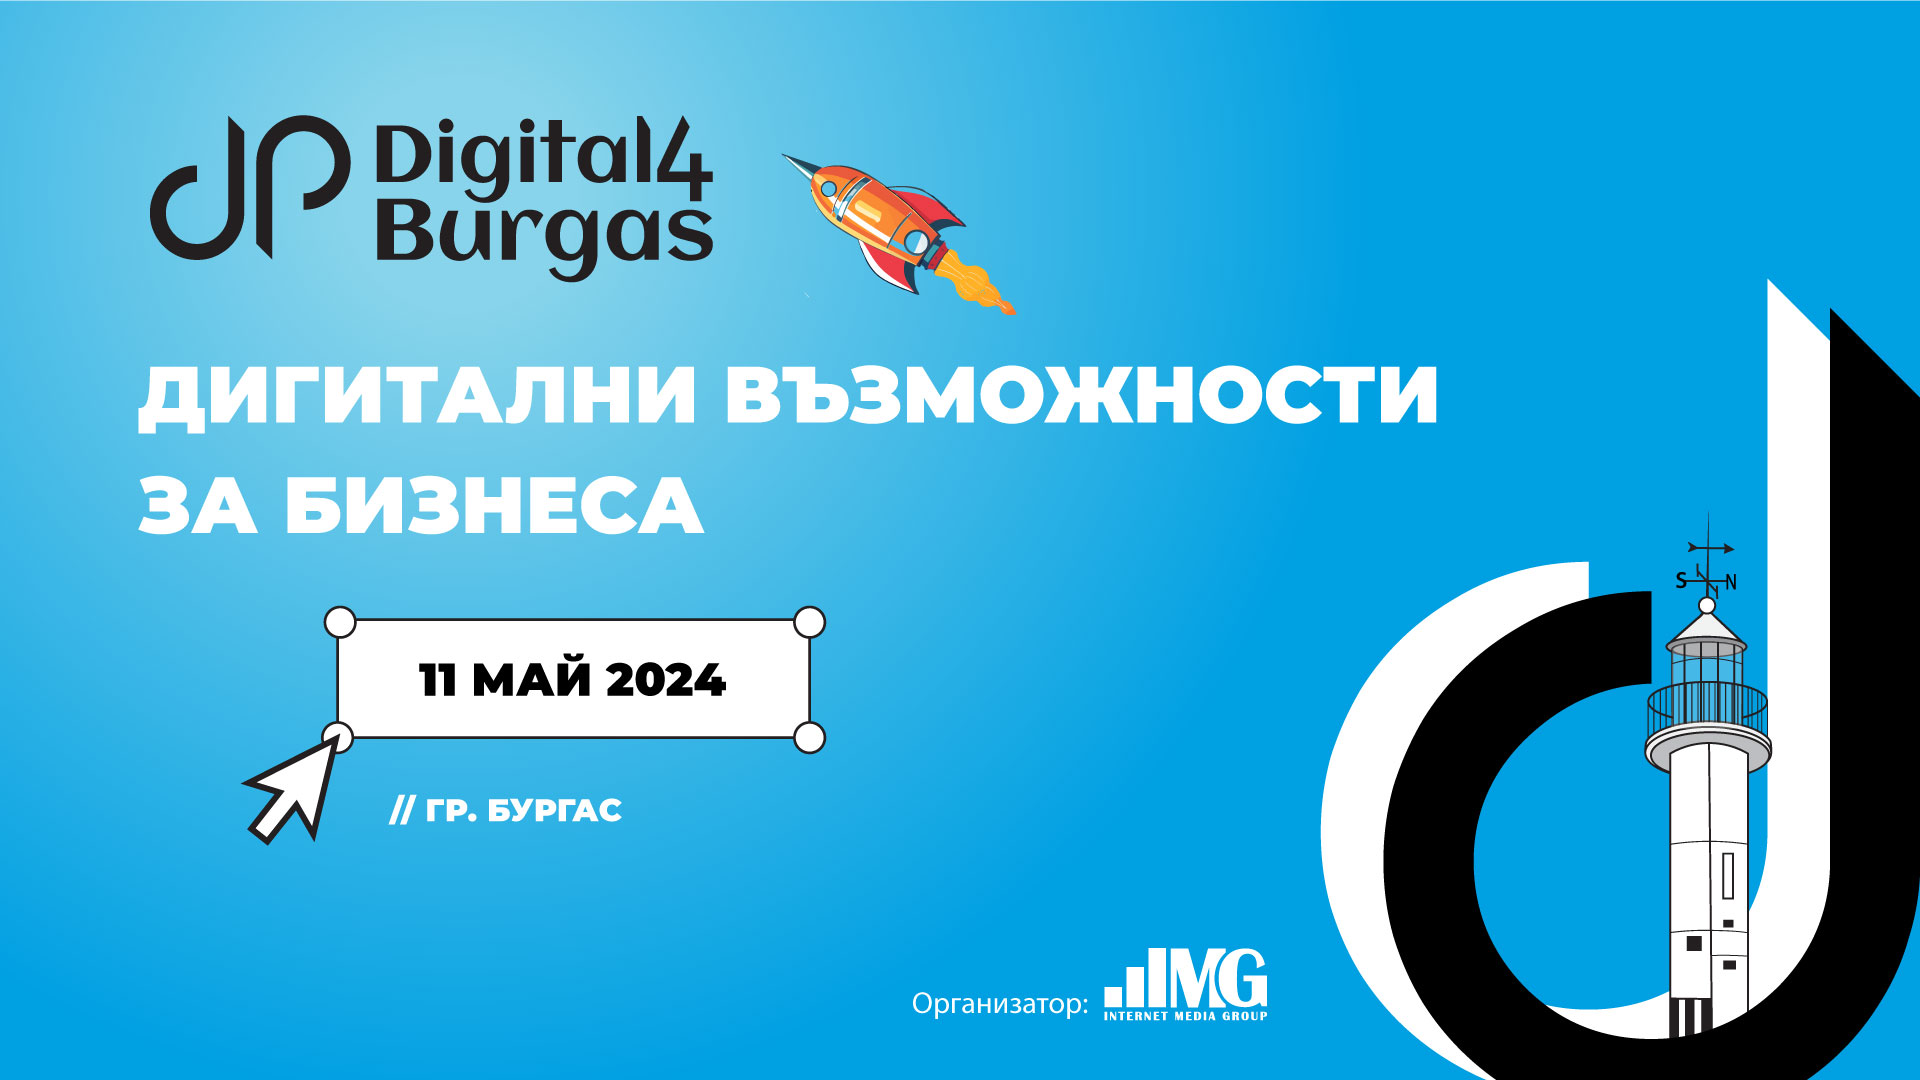 Digital4Burgas: Дигитални възможности за бизнеса